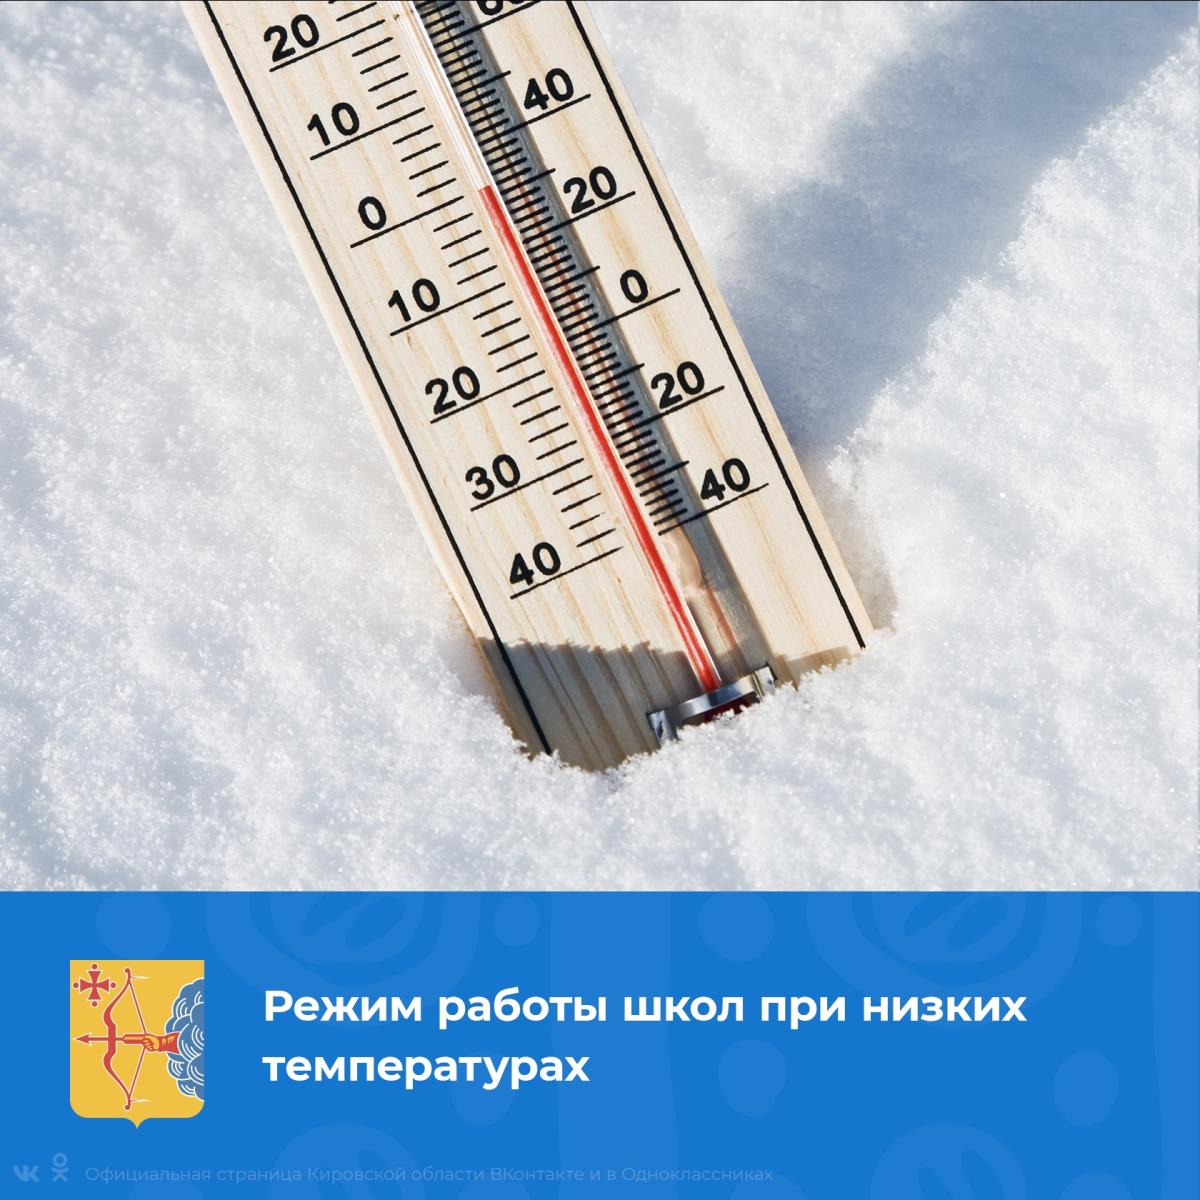 Информация о режиме работы ОО в условиях низких температур.